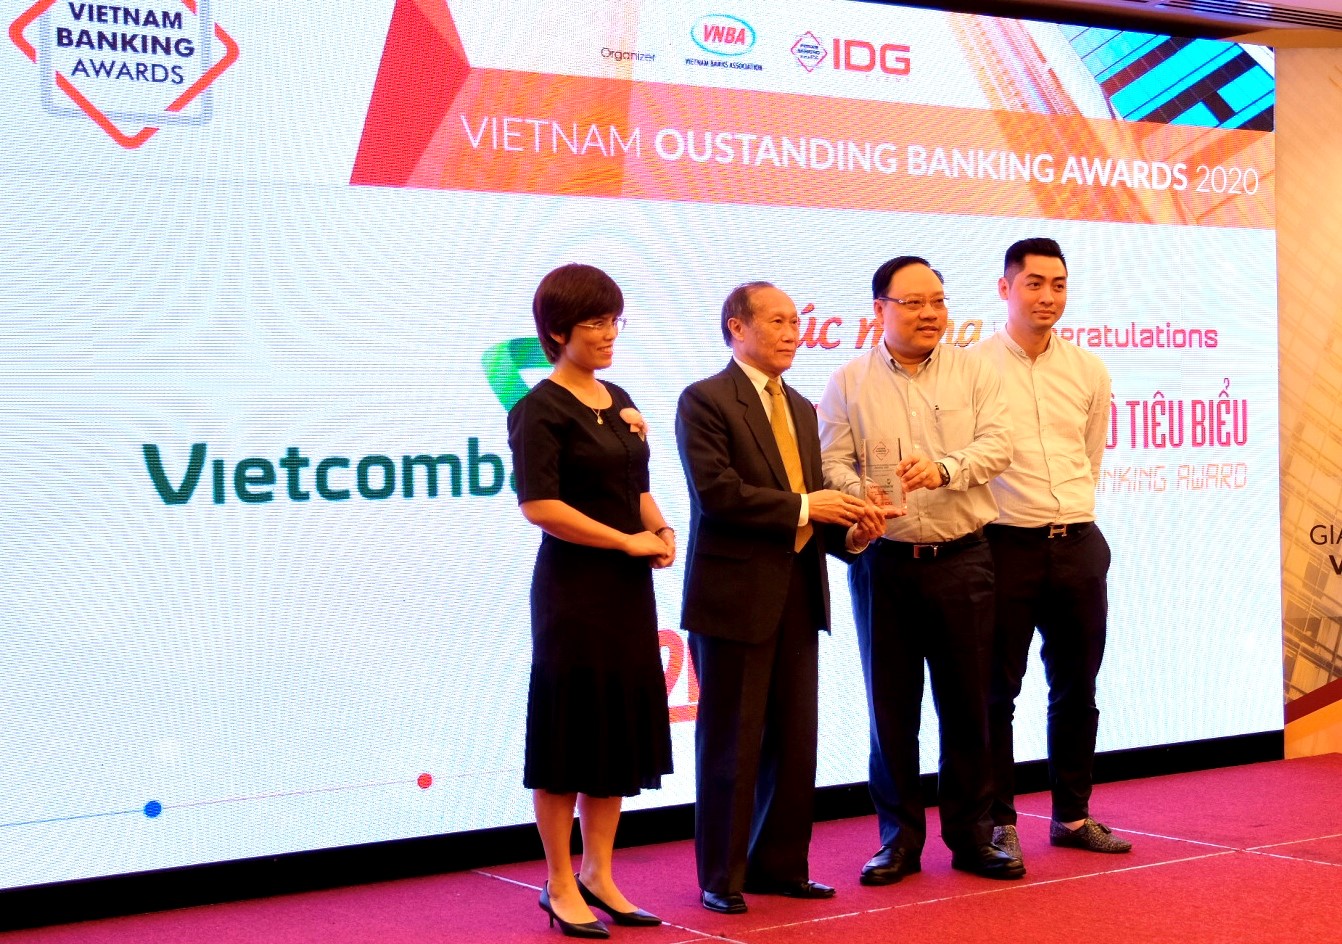 Đại diện VCB nhận giải thưởng “Ngân hàng chuyển đổi số tiêu biểu của Việt Nam năm 2020”.